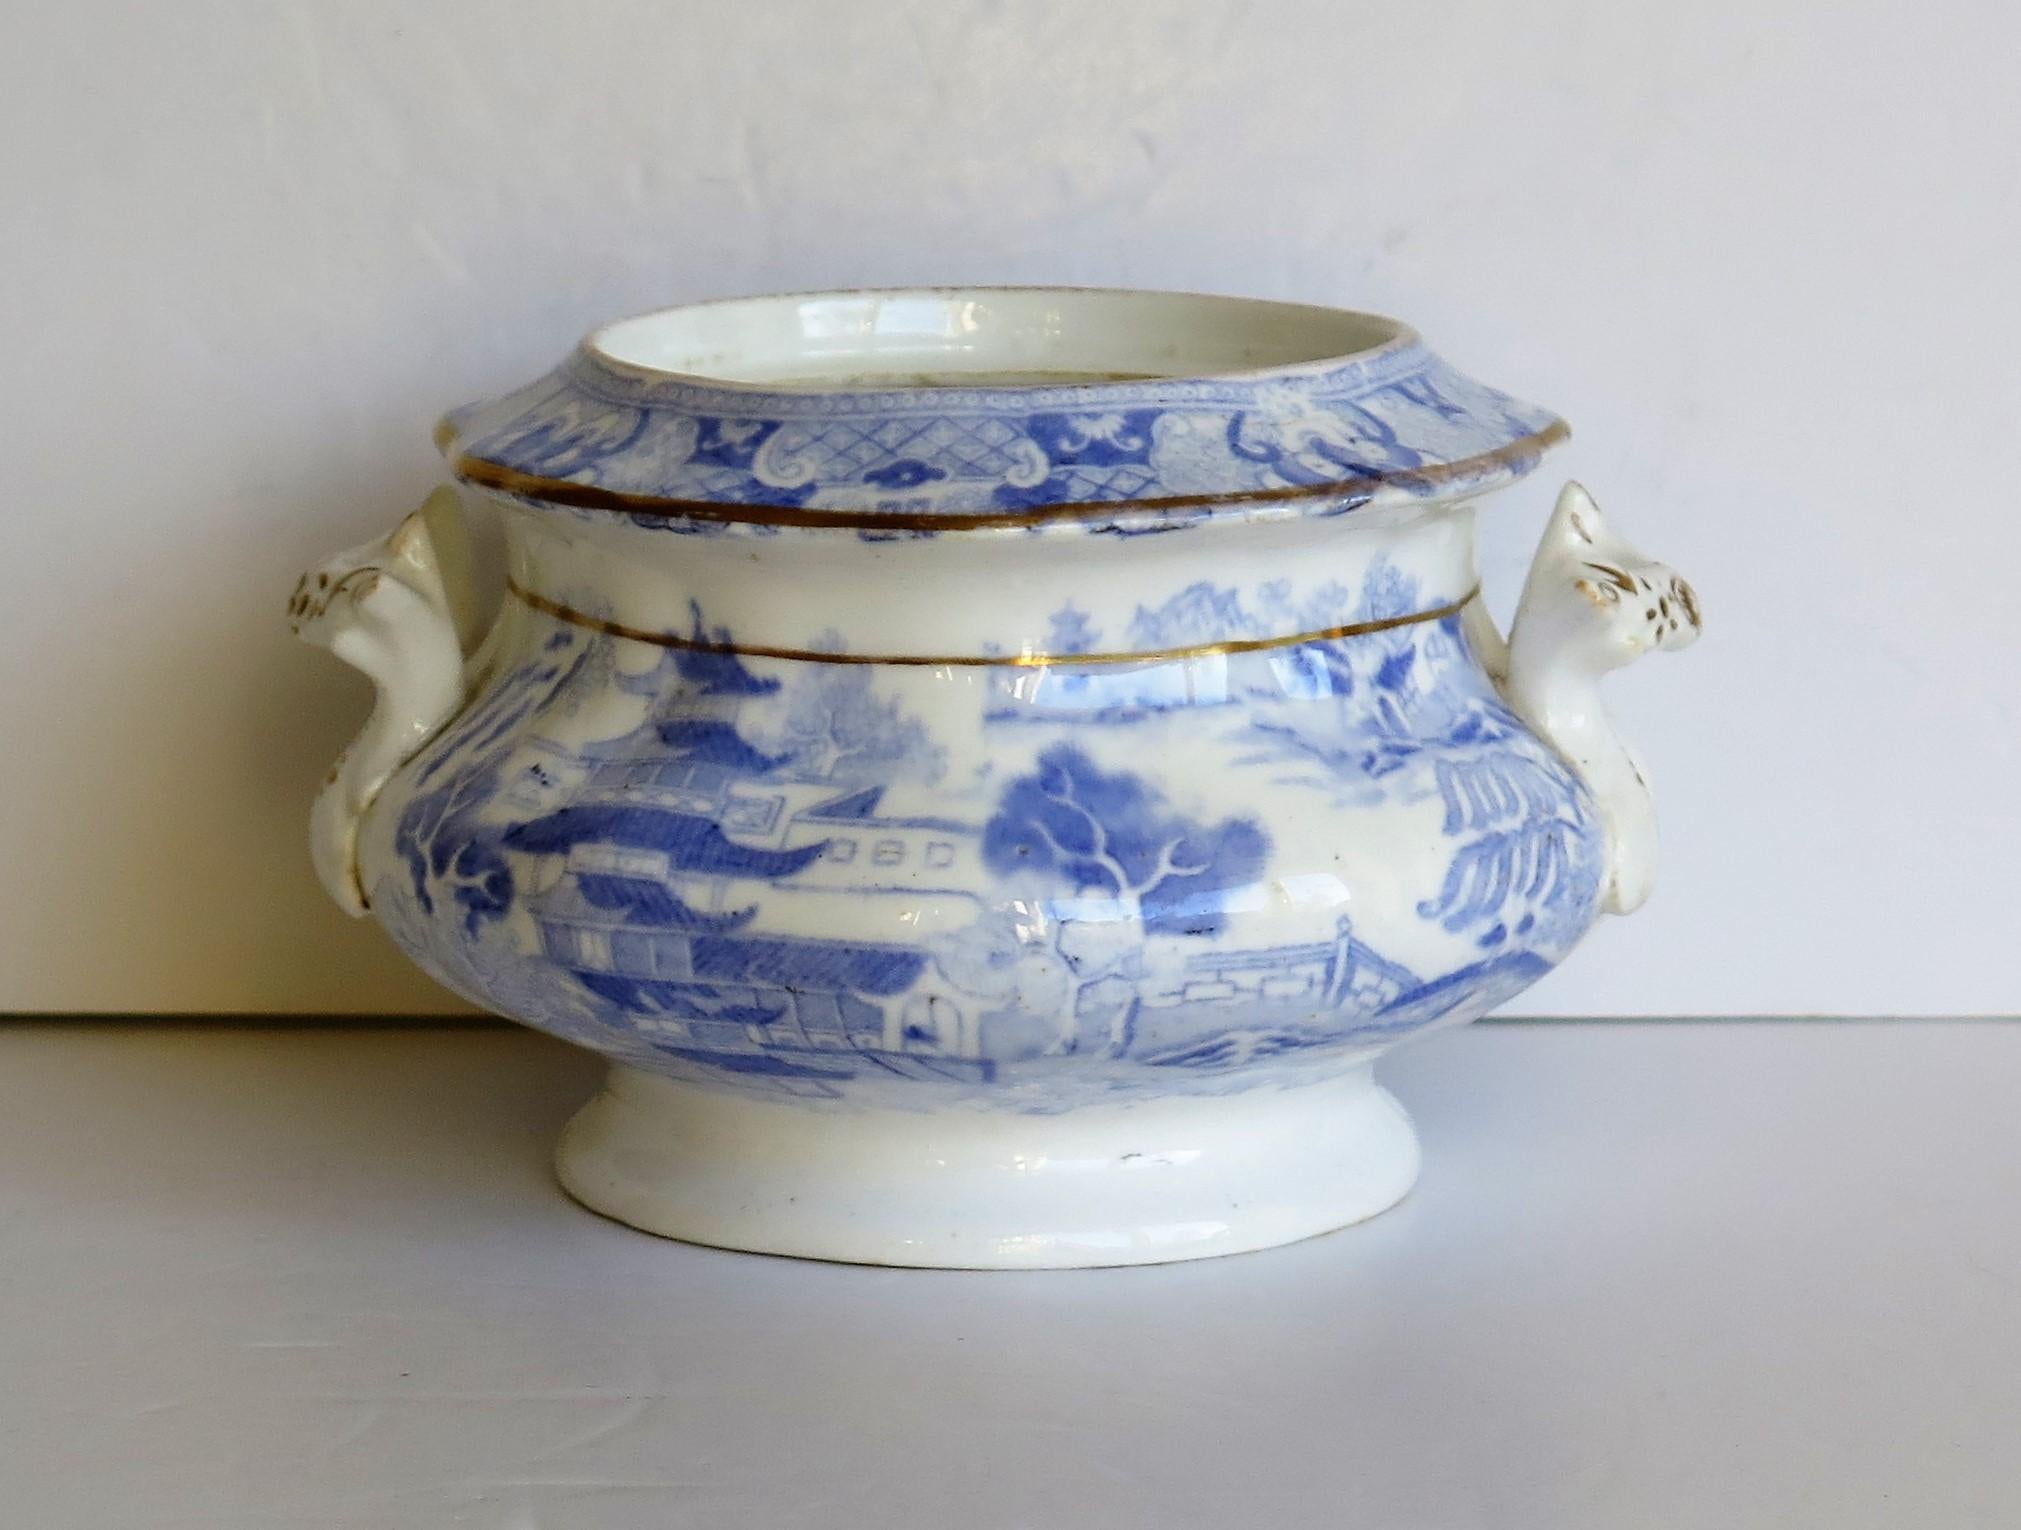 Es handelt sich um eine blau-weiße, handvergoldete Sucrier (Zuckerdose) aus Porzellan mit dem Broseley-Druckmuster, hergestellt von Miles Mason (Mason's), Staffordshire Potteries, im frühen 19. Jahrhundert, um 1810.

Dieses Stück ist gut